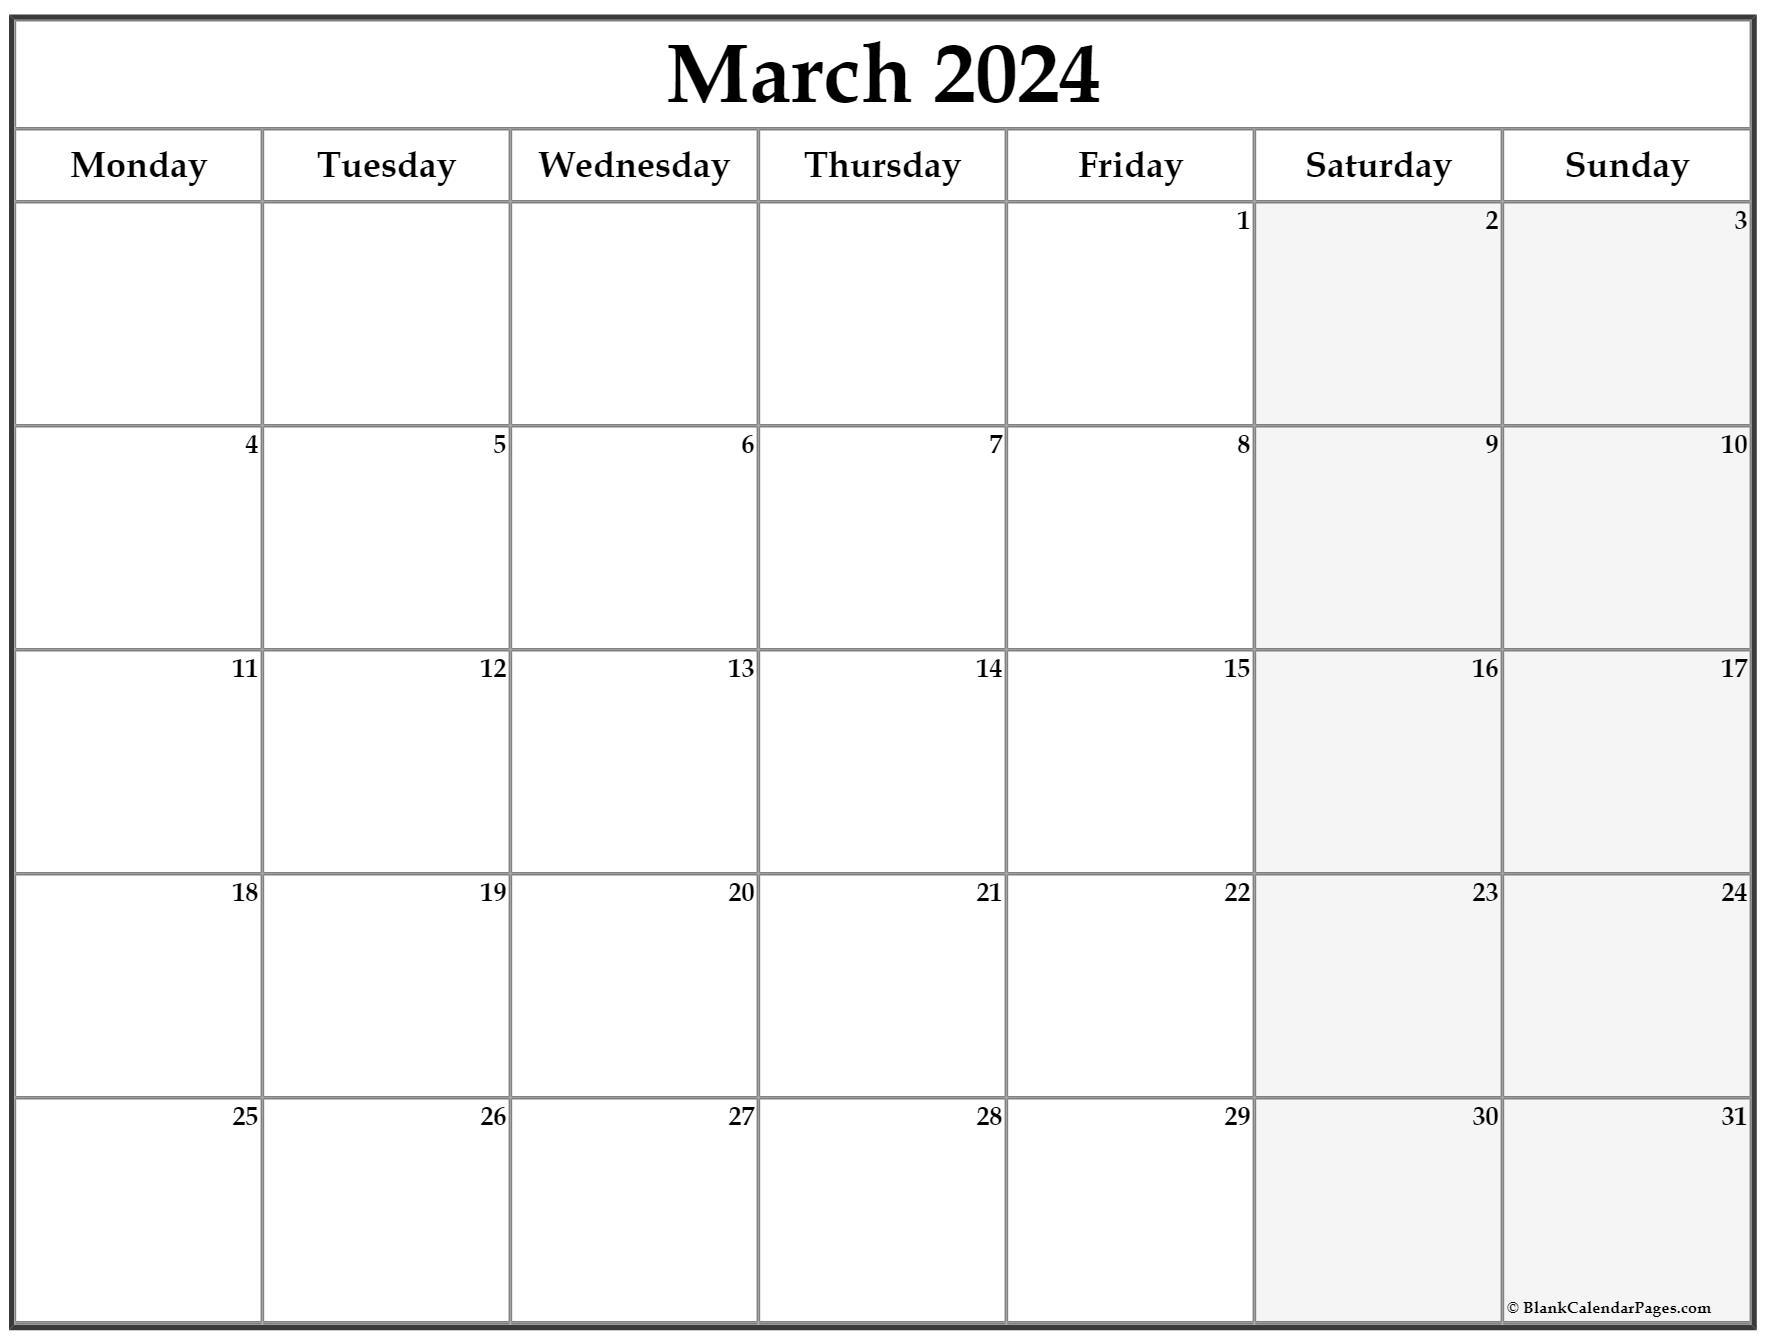 march-2023-calendar-monday-start-get-calendar-2023-update